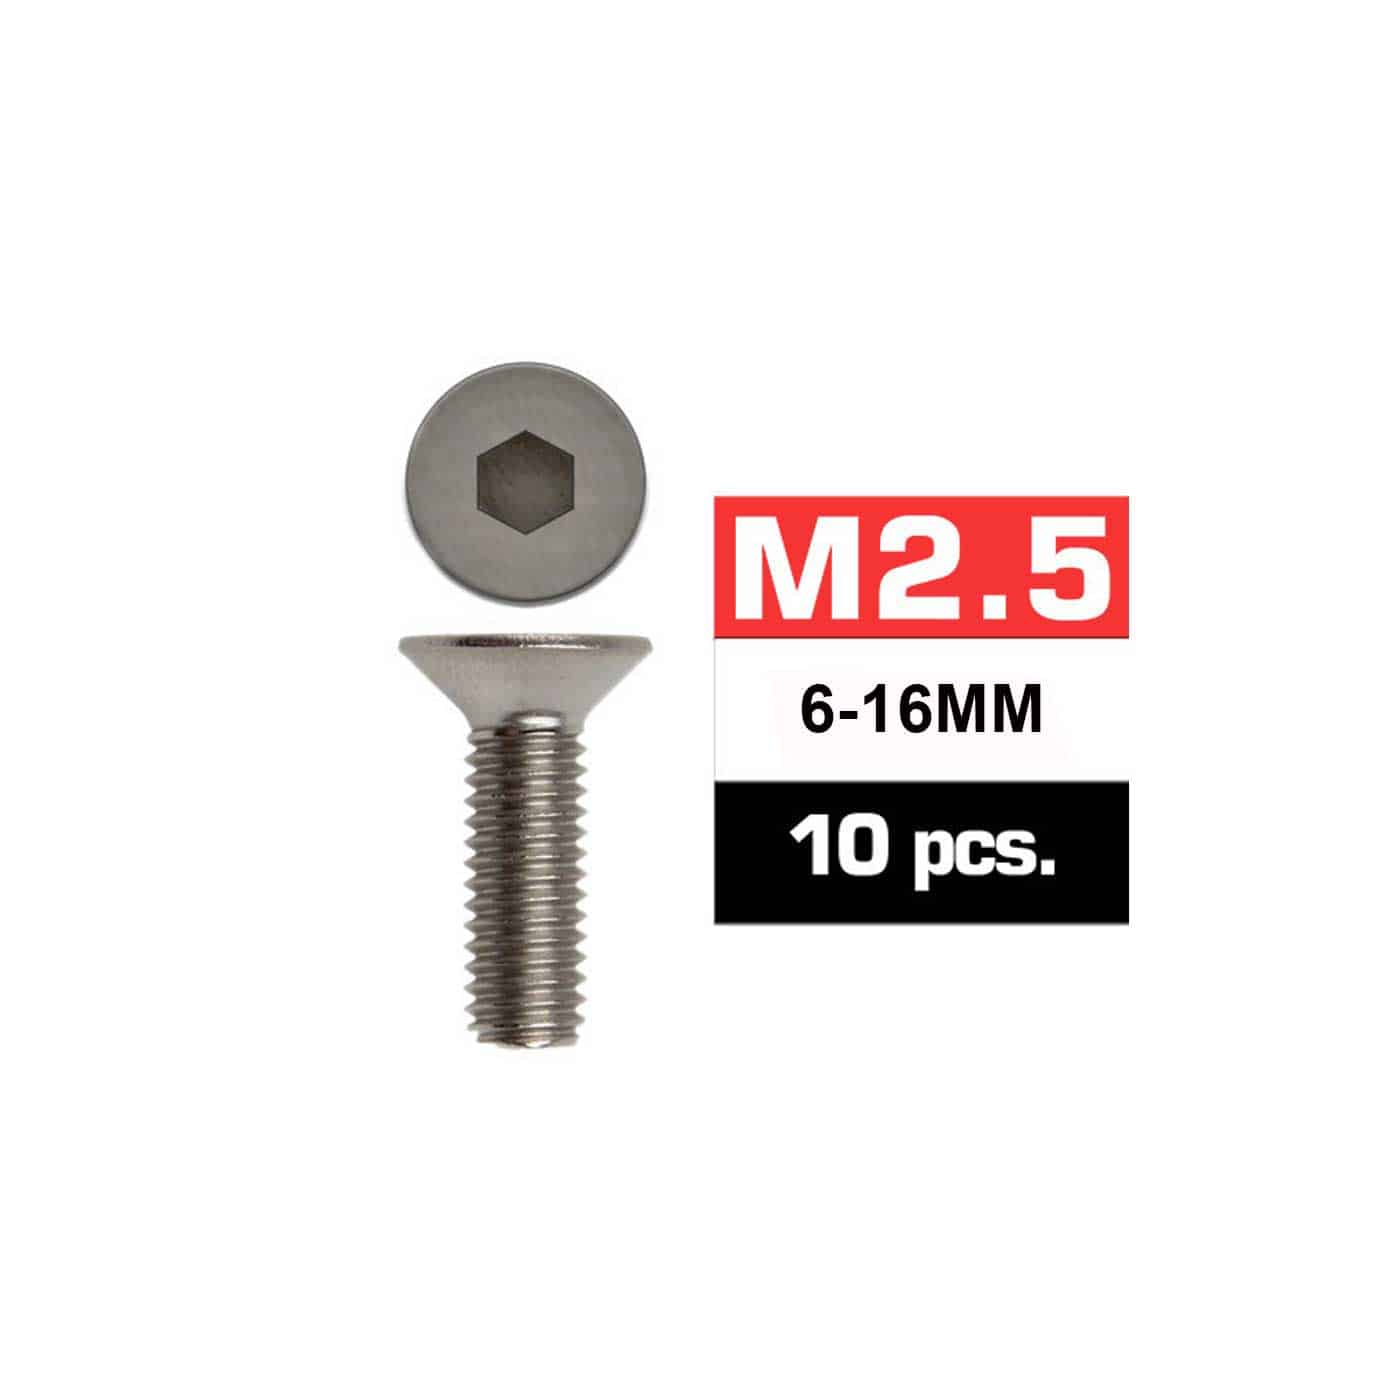 Tornillos métrica 2.5 6-16mm. avellanado - Brutepower